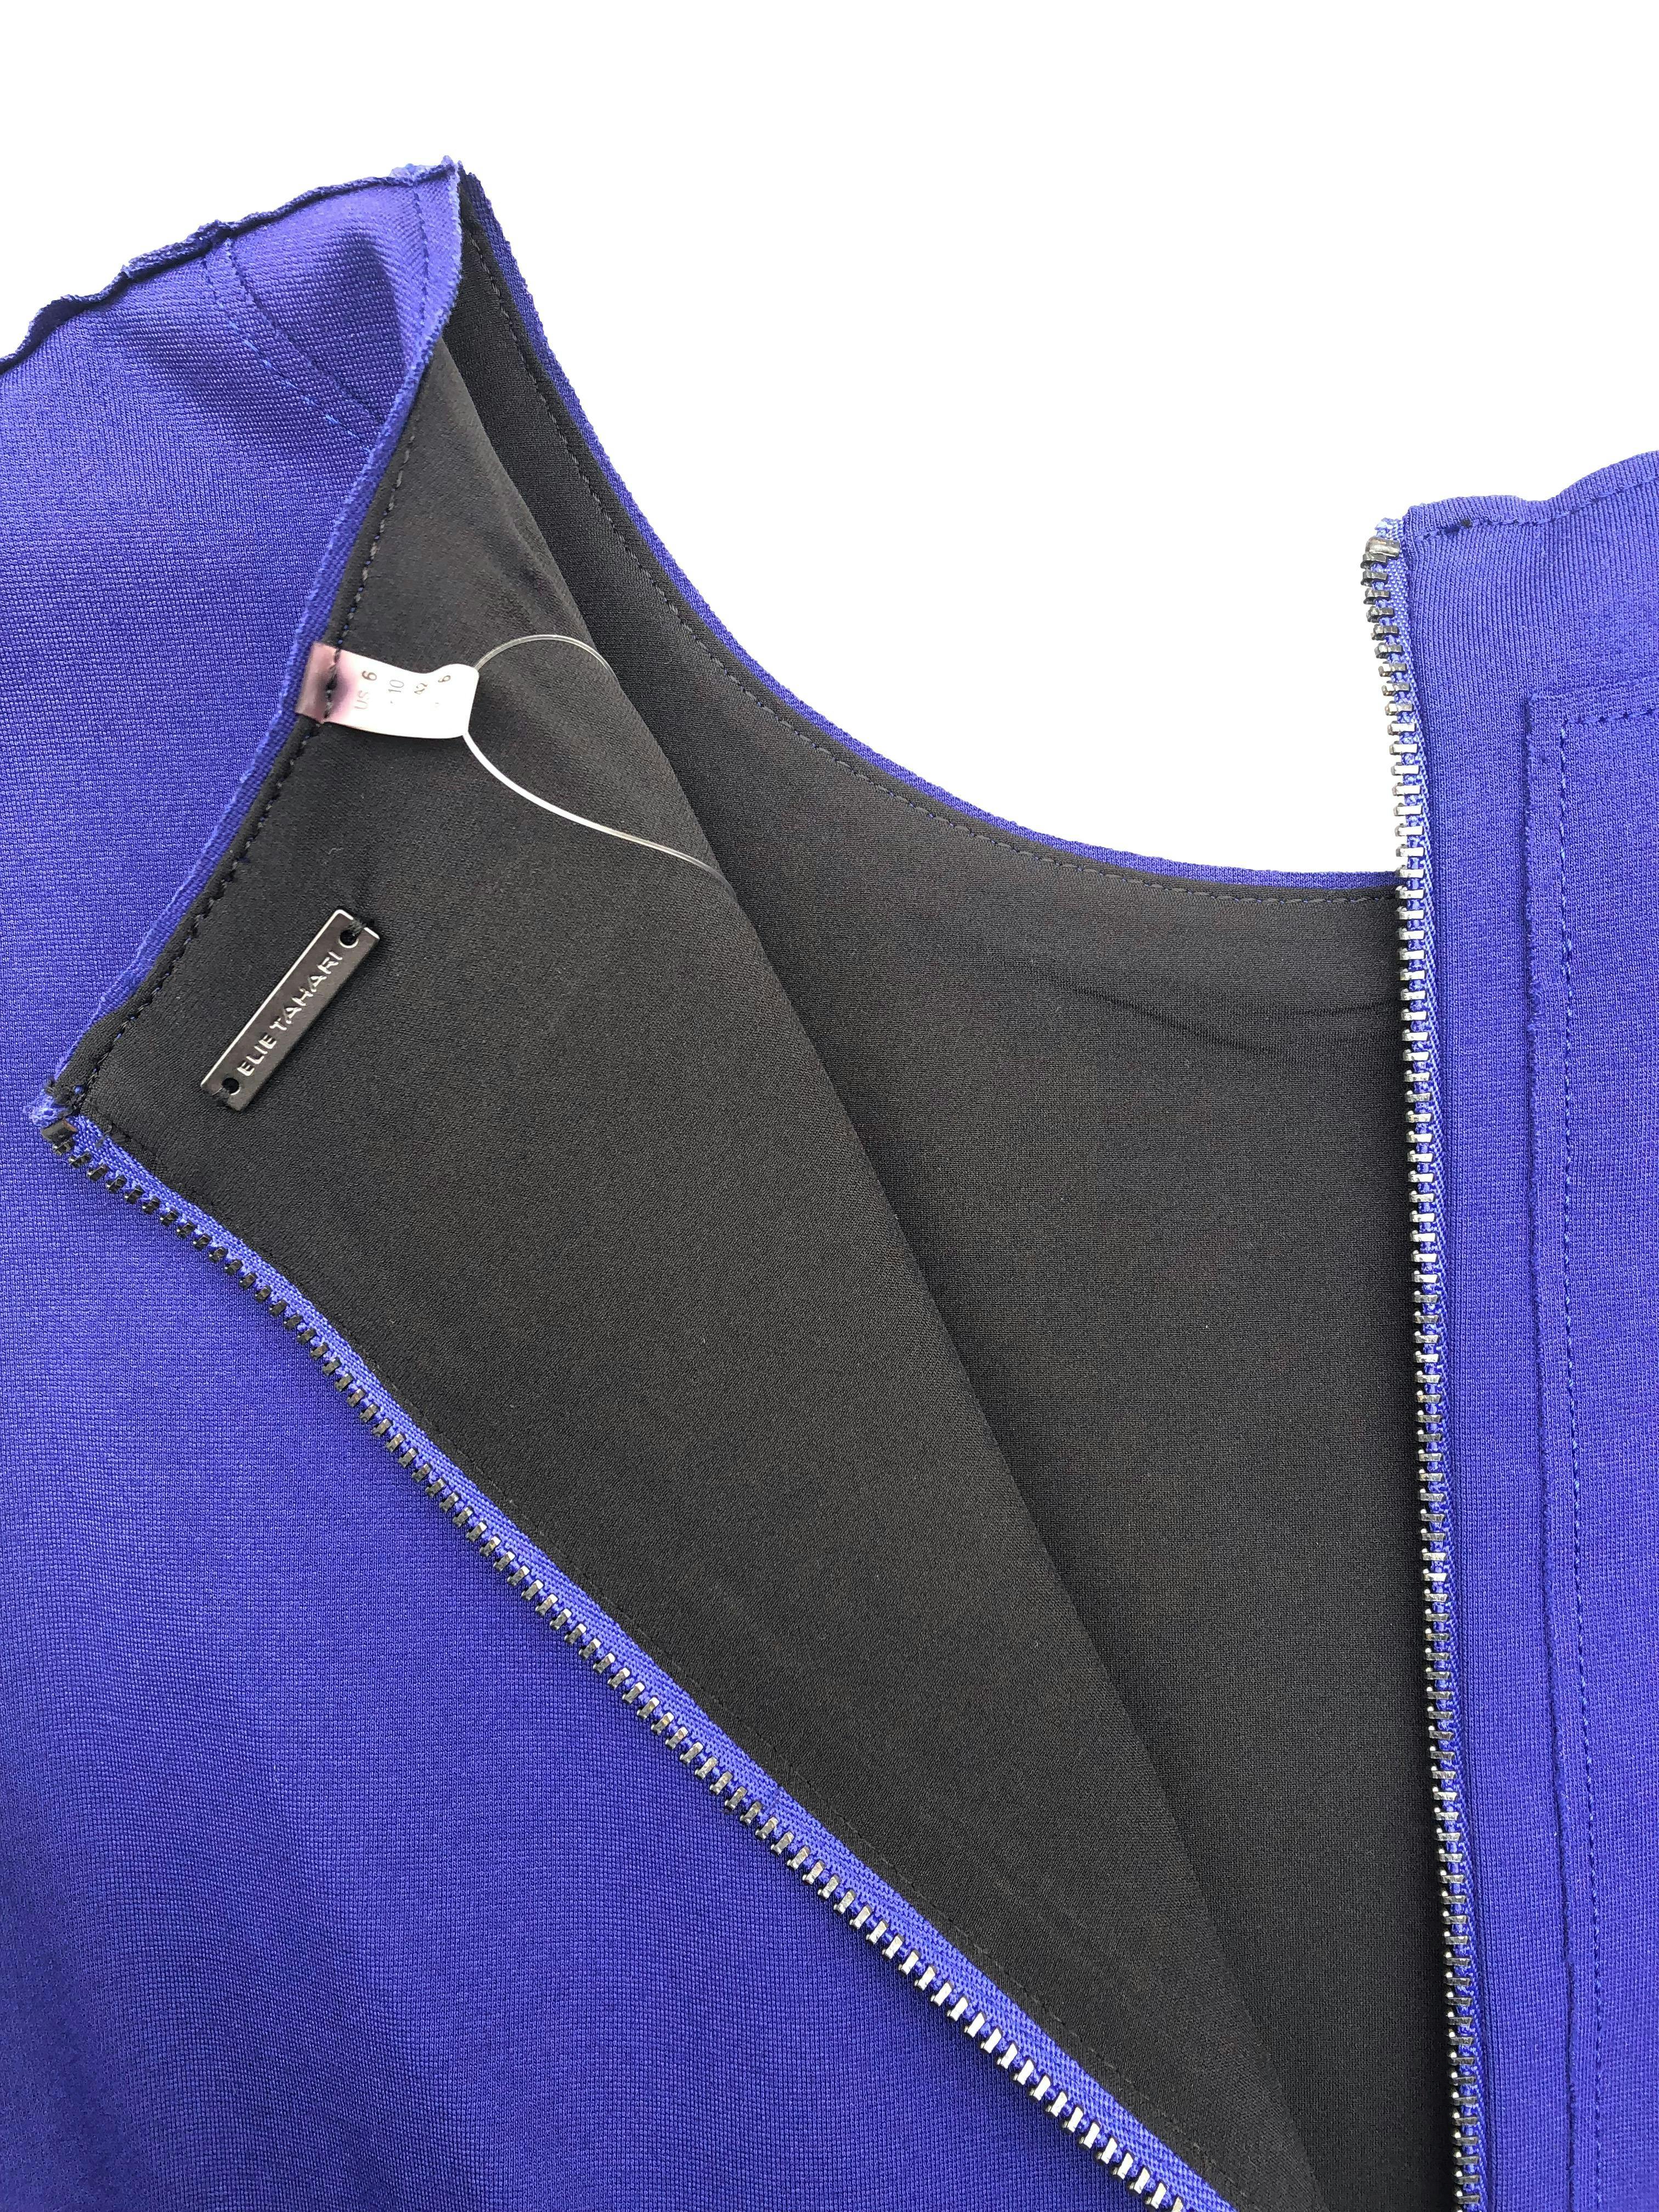 Vestido Elie Tahari azul con costuras externas, peplum, cierre en la espalda y forro, tela gruesa stretch. Busto 90cm Cintura 72cm Largo 99cm